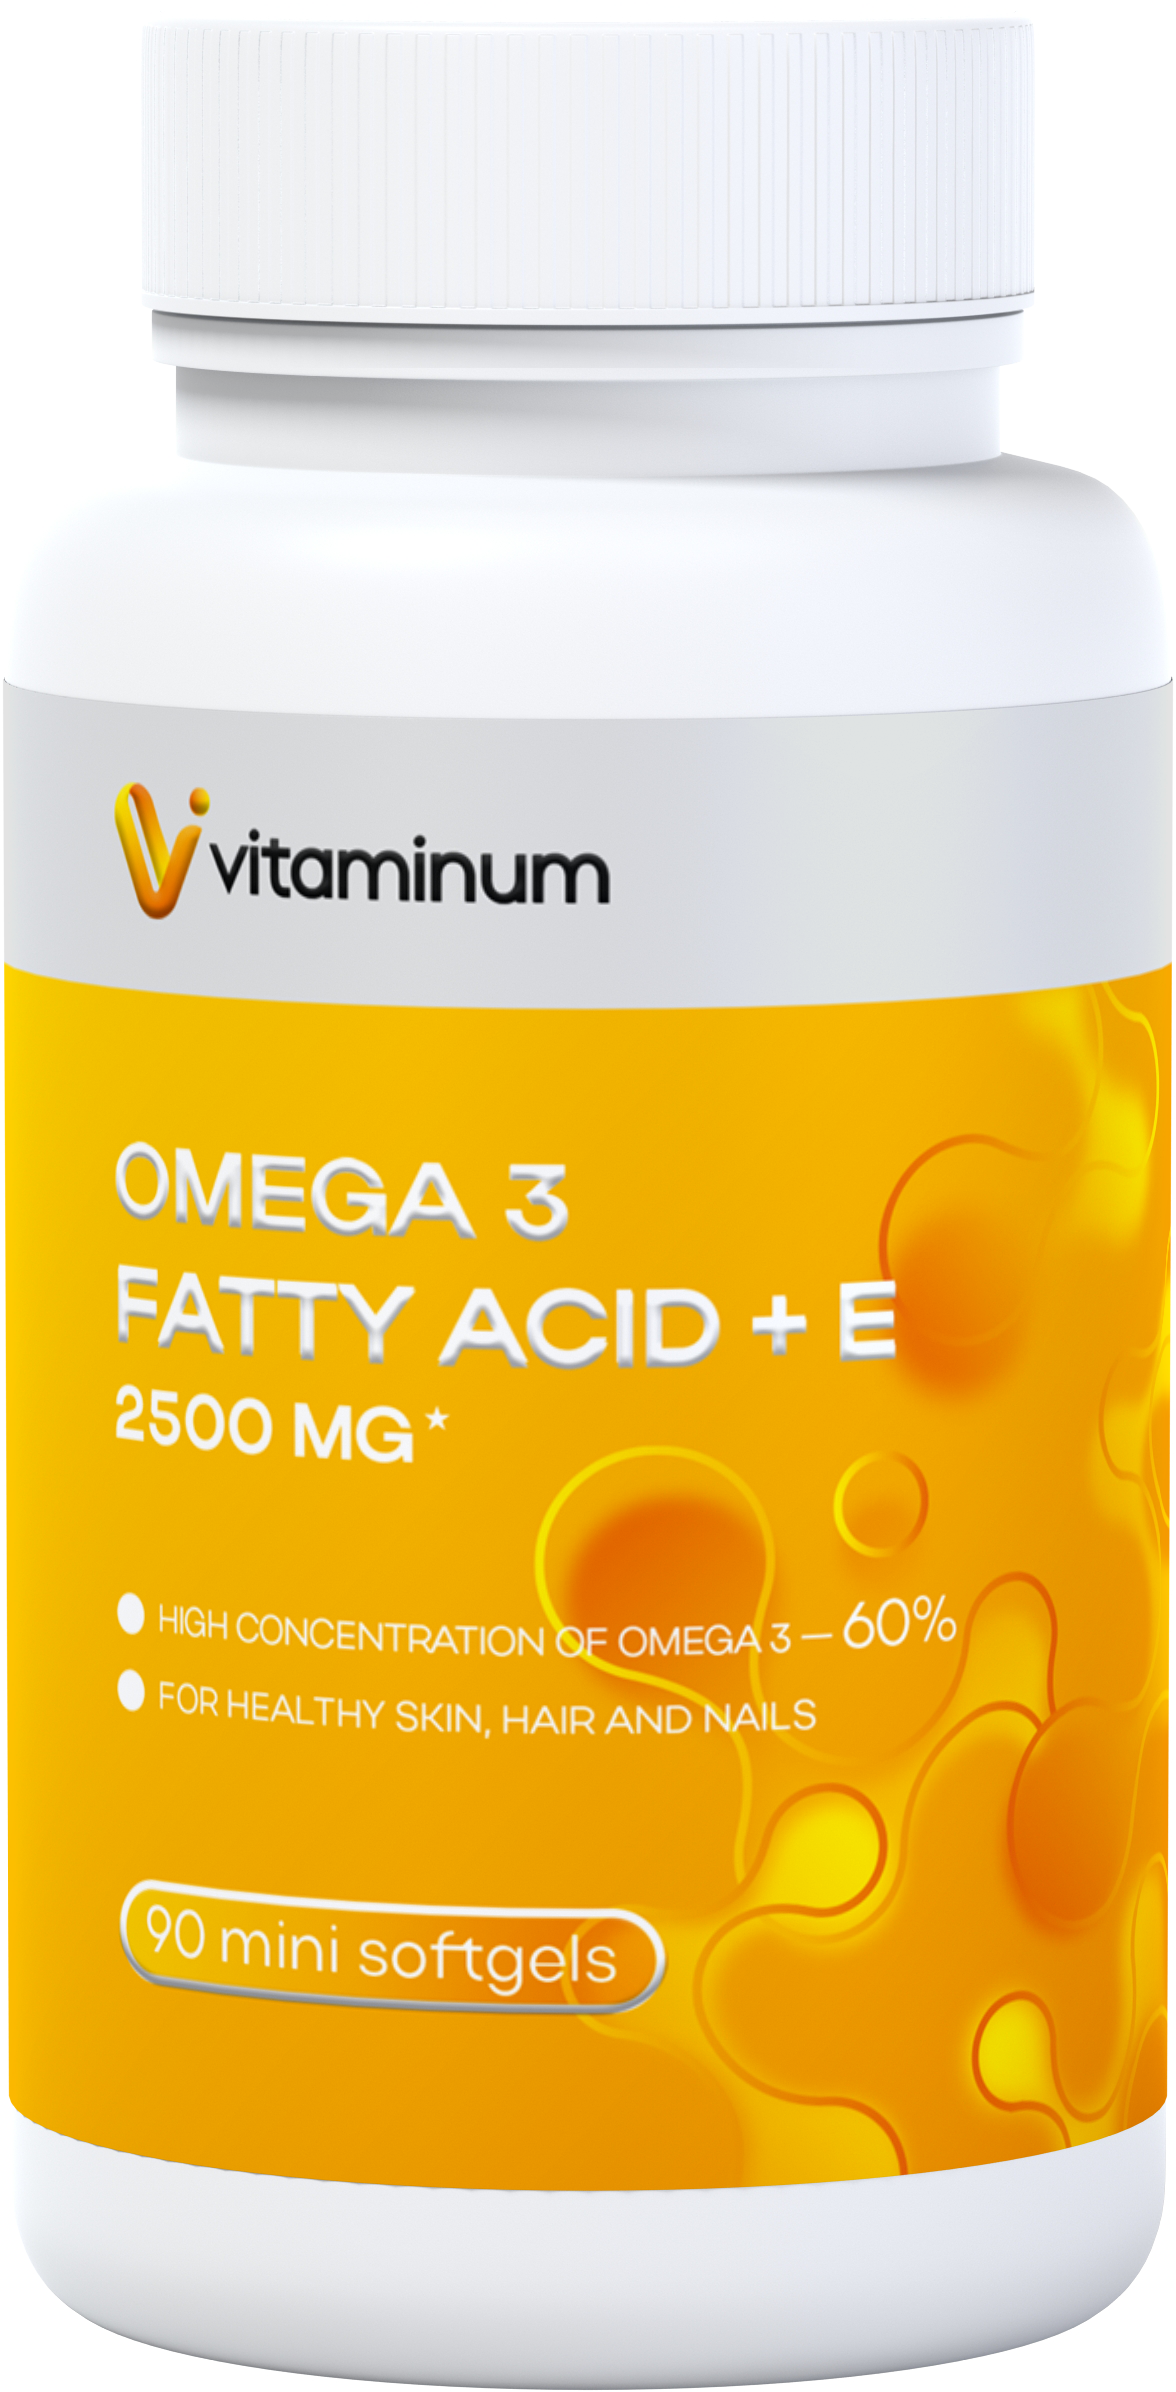  Vitaminum ОМЕГА 3 60% + витамин Е (2500 MG*) 90 капсул 700 мг   в Новороссийске